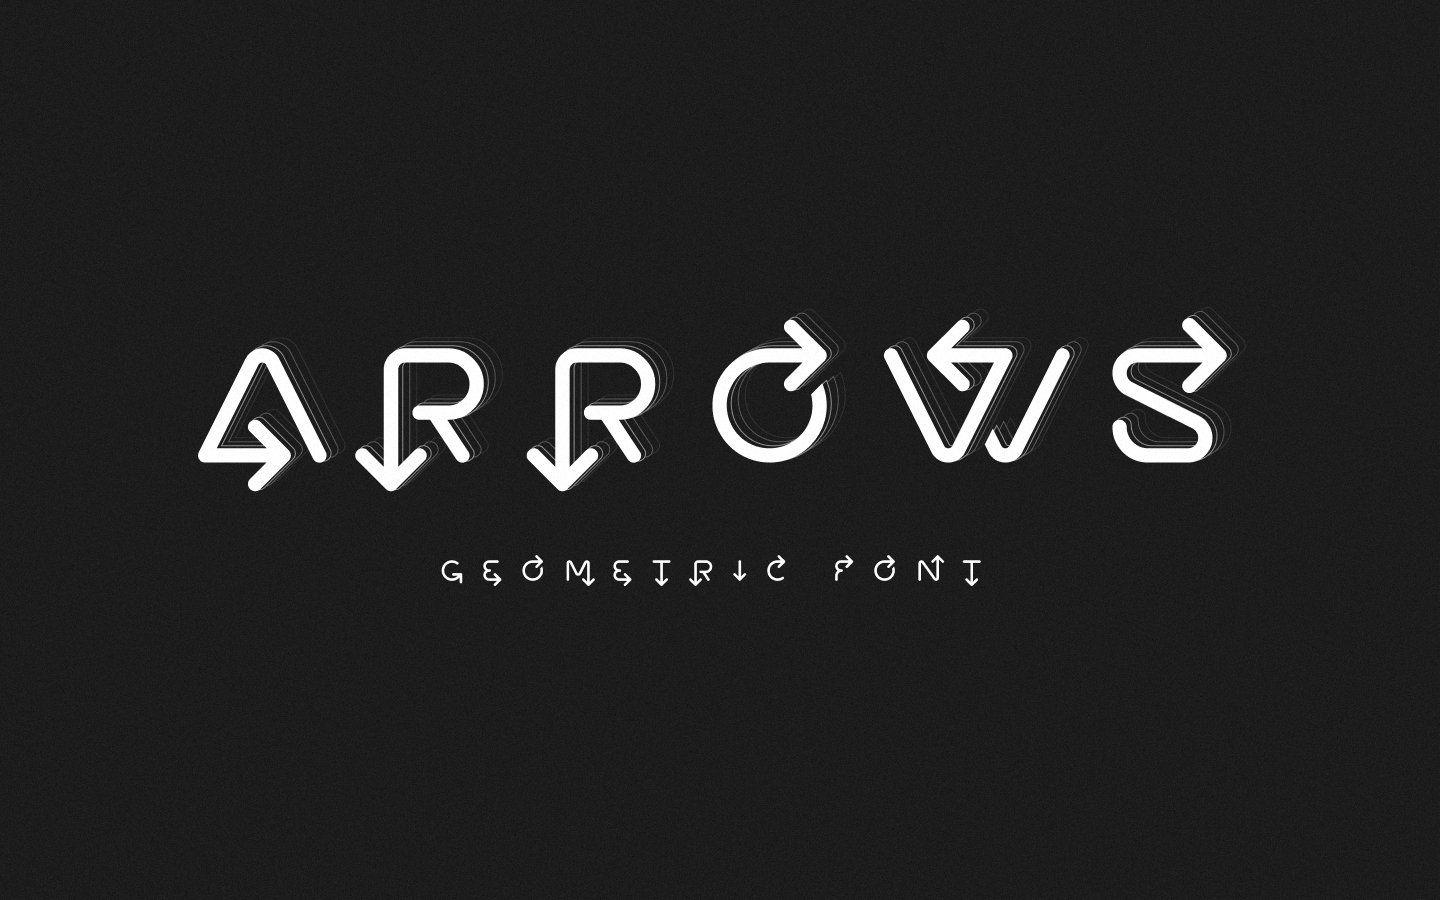 Arrows line font cover image.